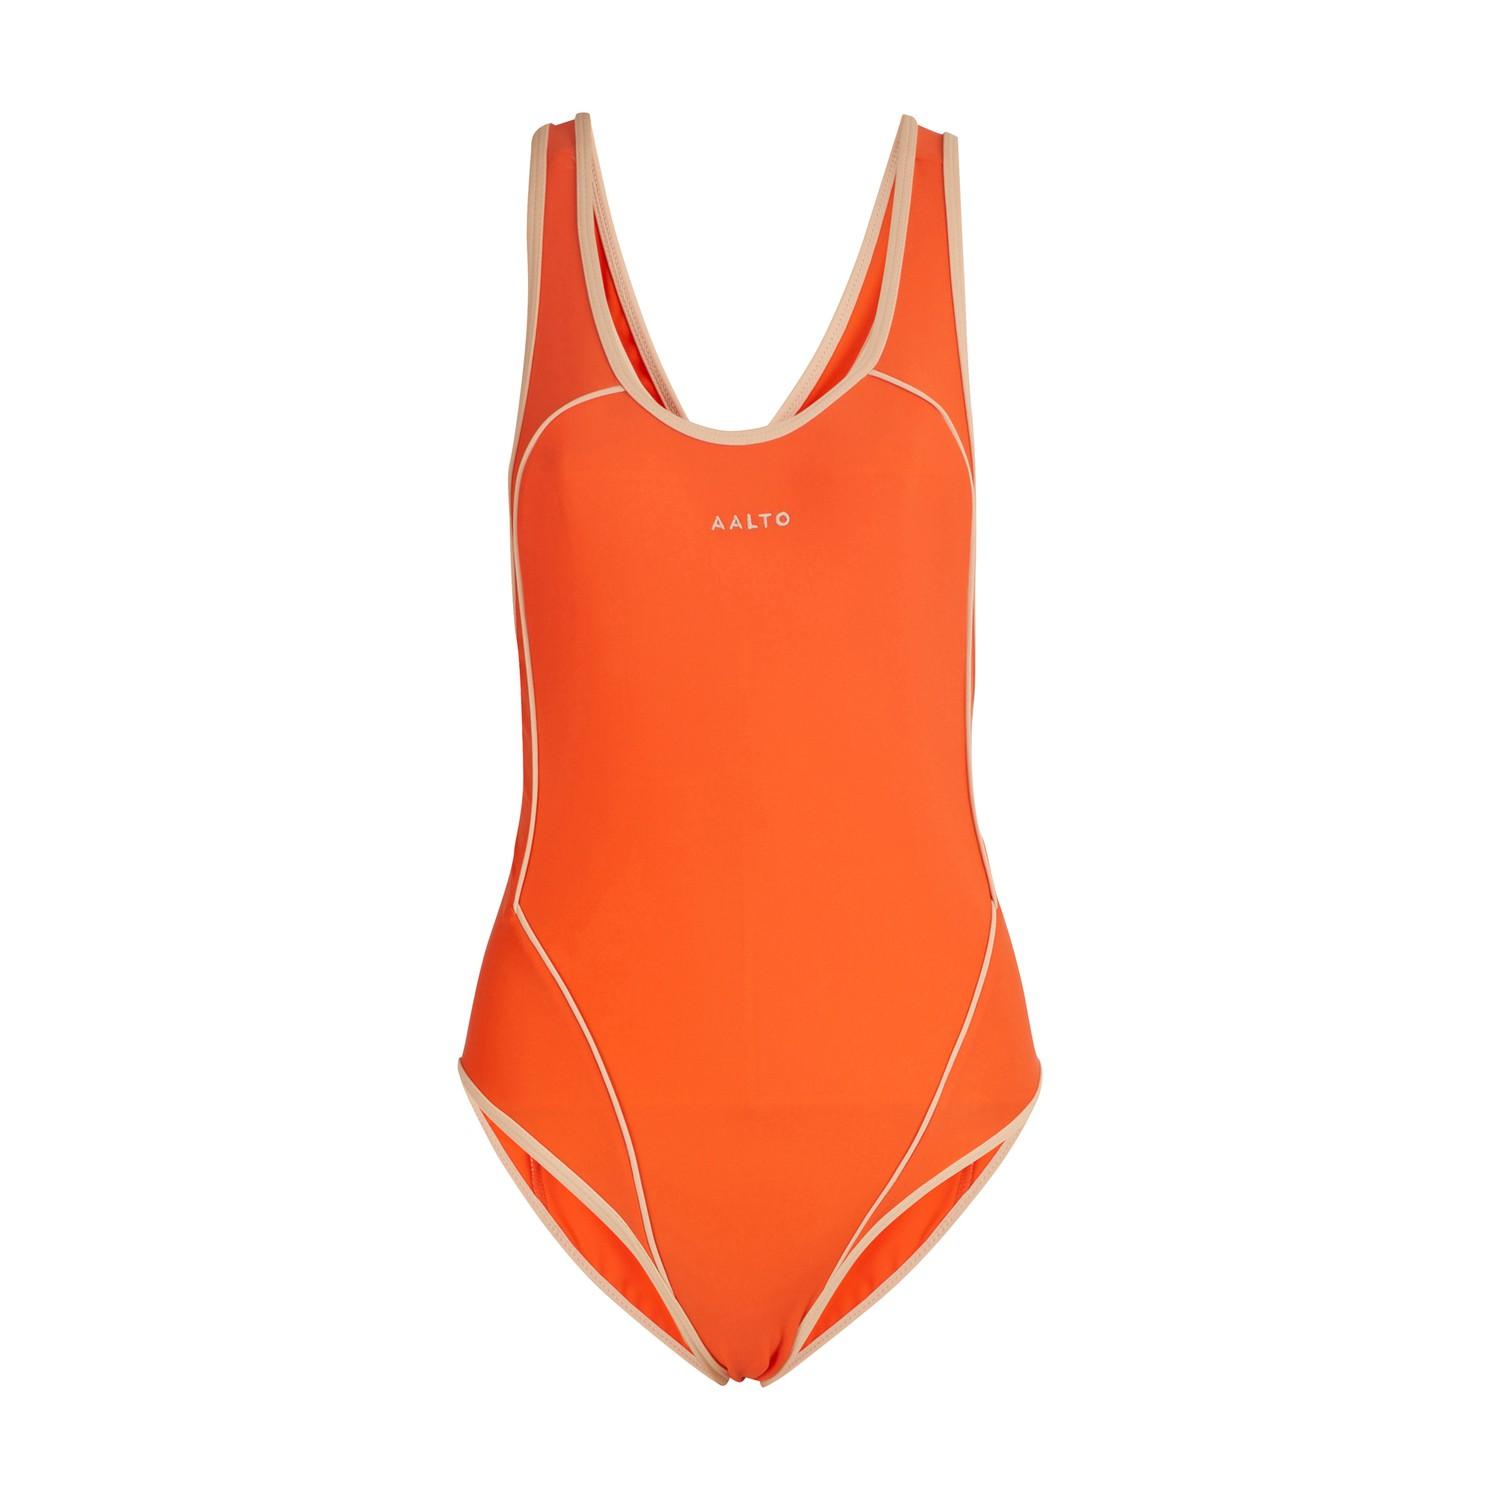 AALTO One-piece Bathing Suit in Orange - Lyst